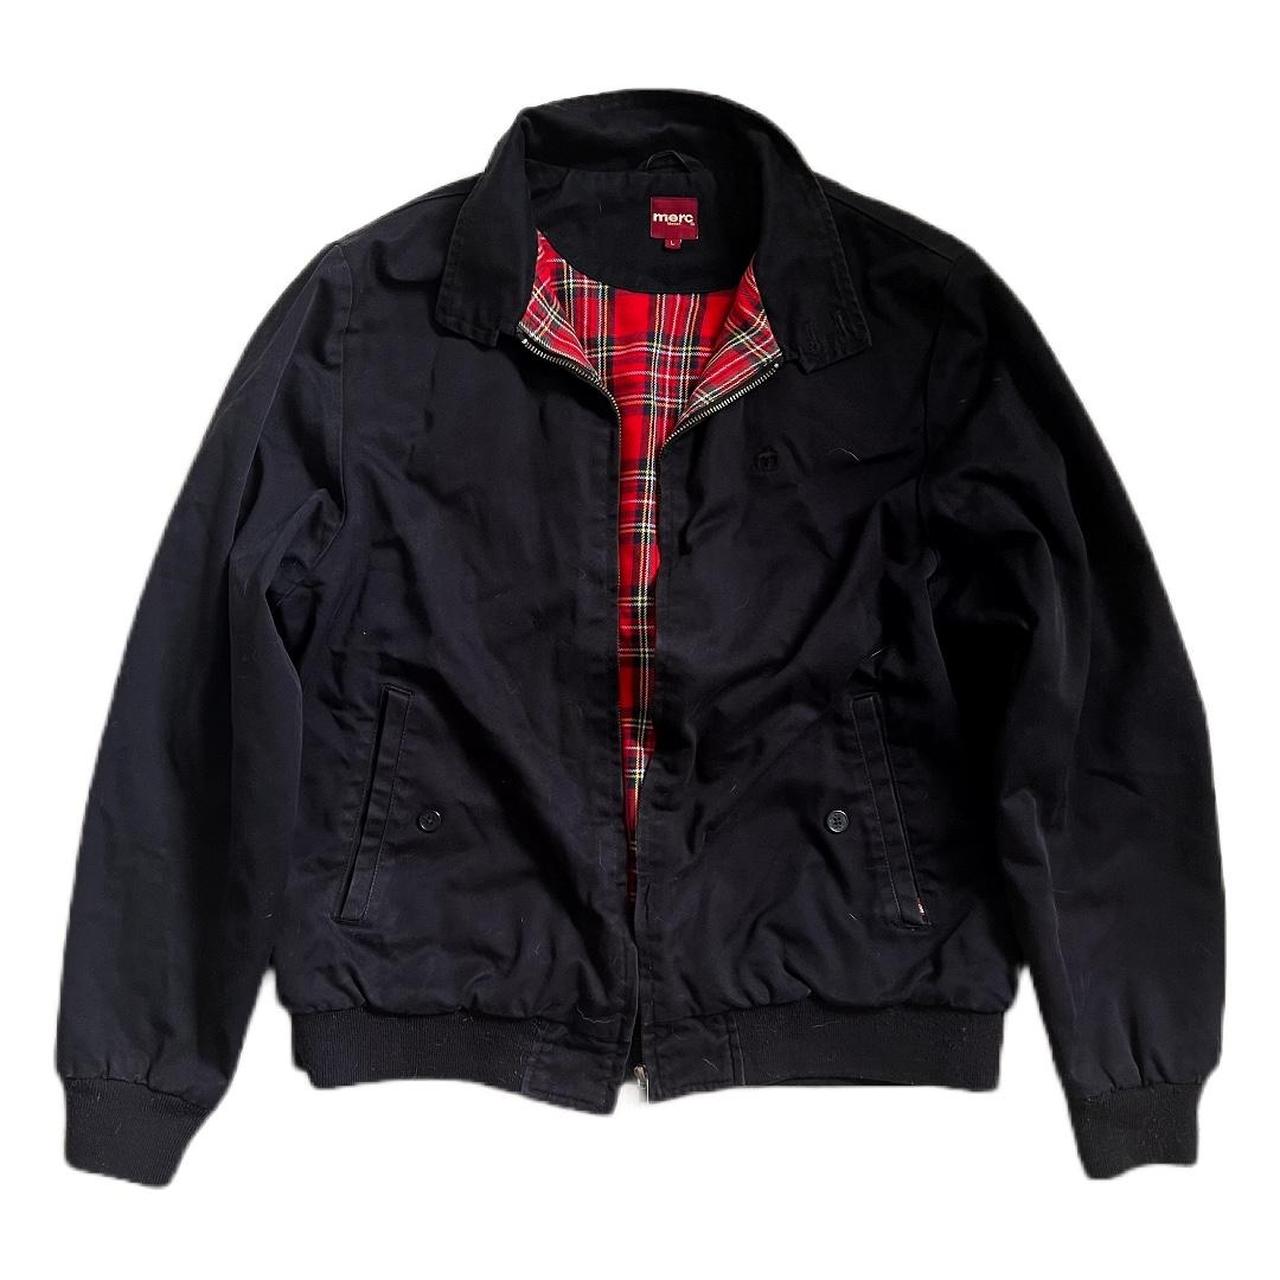 Merc Harrington Jacket - good quality jacket. I’ve... - Depop